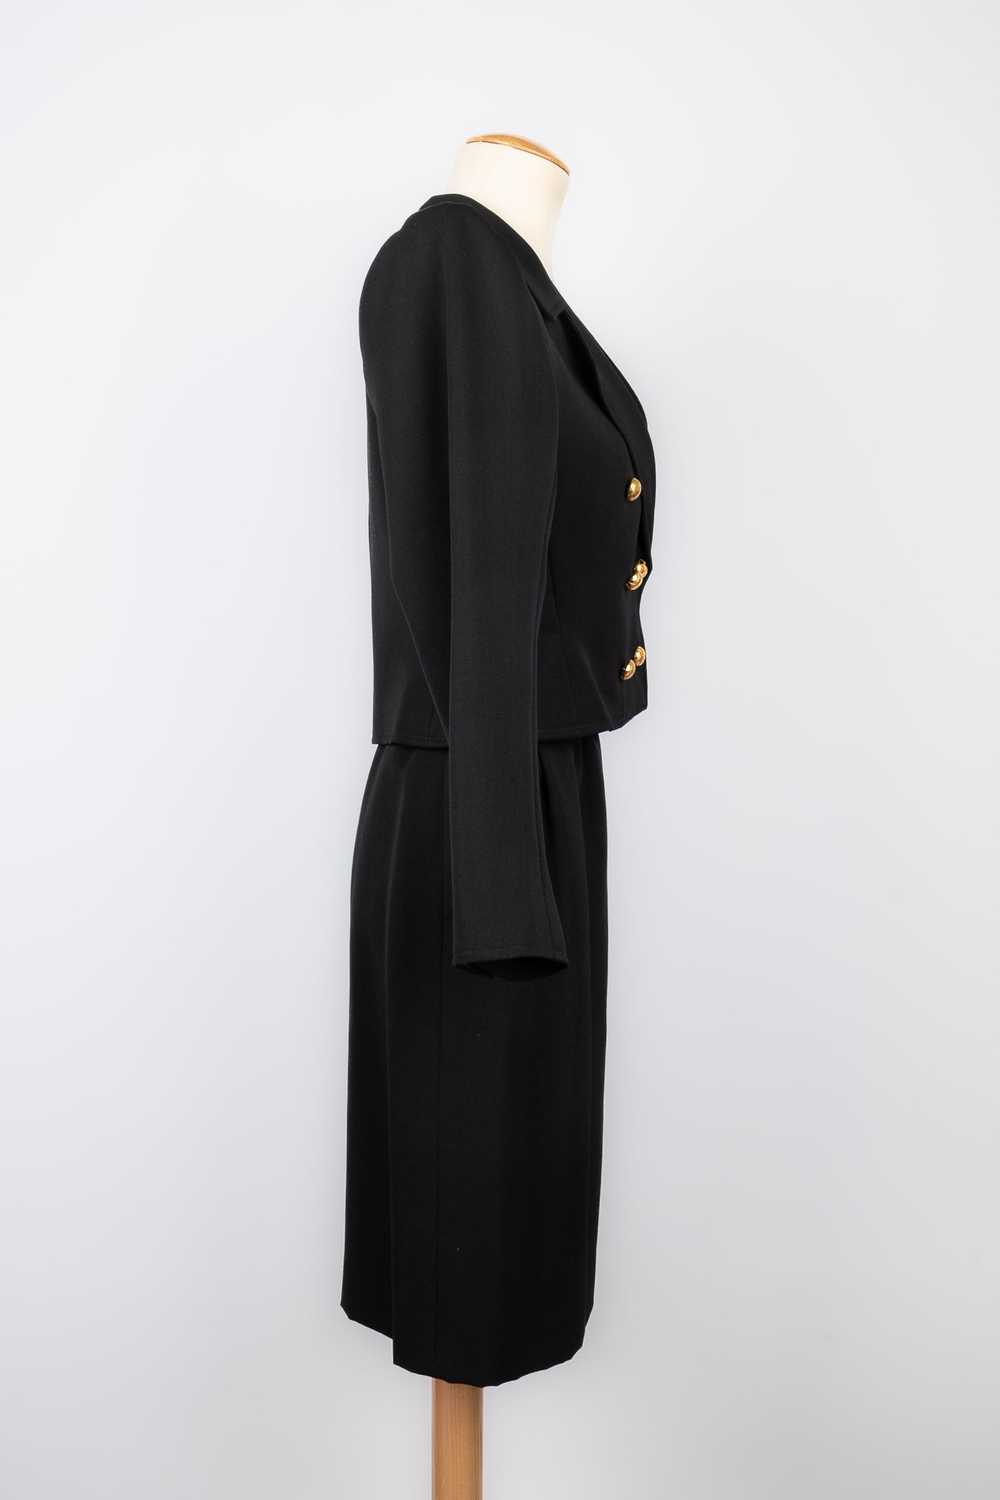 Yves saint Laurent suit Haute Couture - image 4